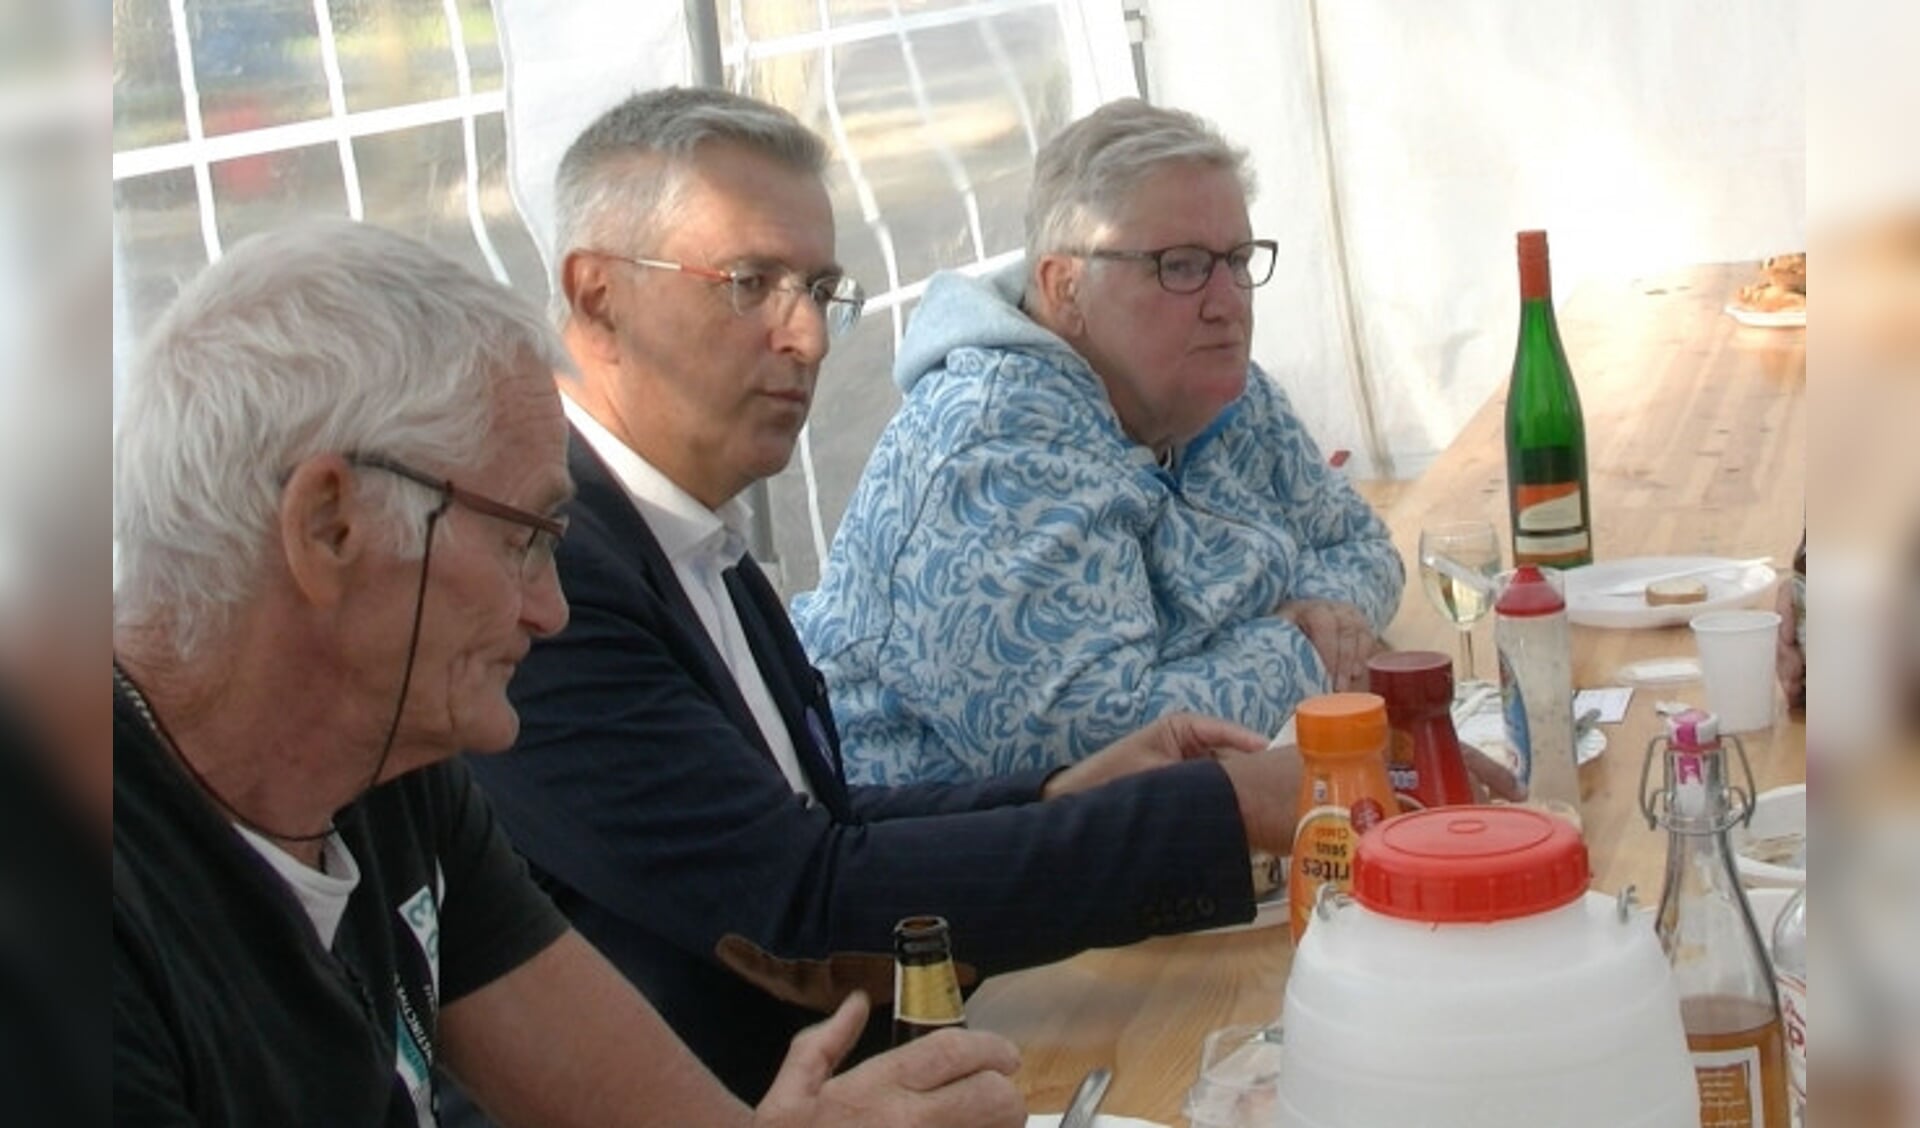  Wethouder Ton van Amerongen tijdens de barbecue in gesprek met inwoners van Biddinghuizen.